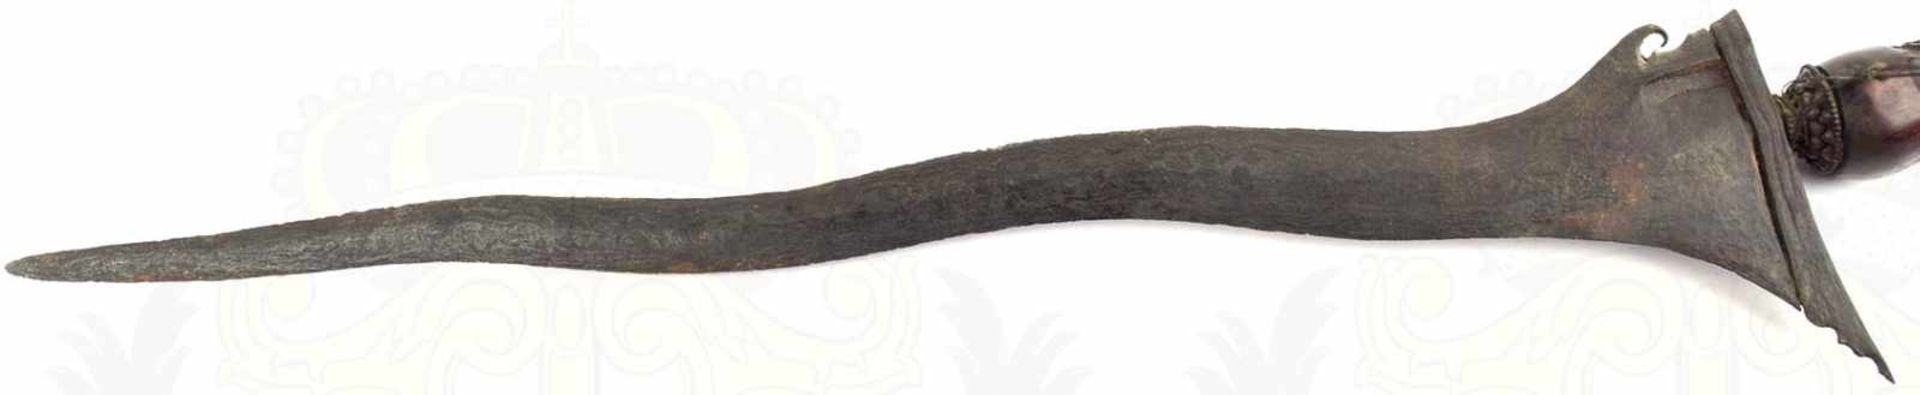 KRIS, Java um 1900, geflammte Klinge, durchgehen kleine Närbchen, Holzgriff m. etwas - Bild 2 aus 3